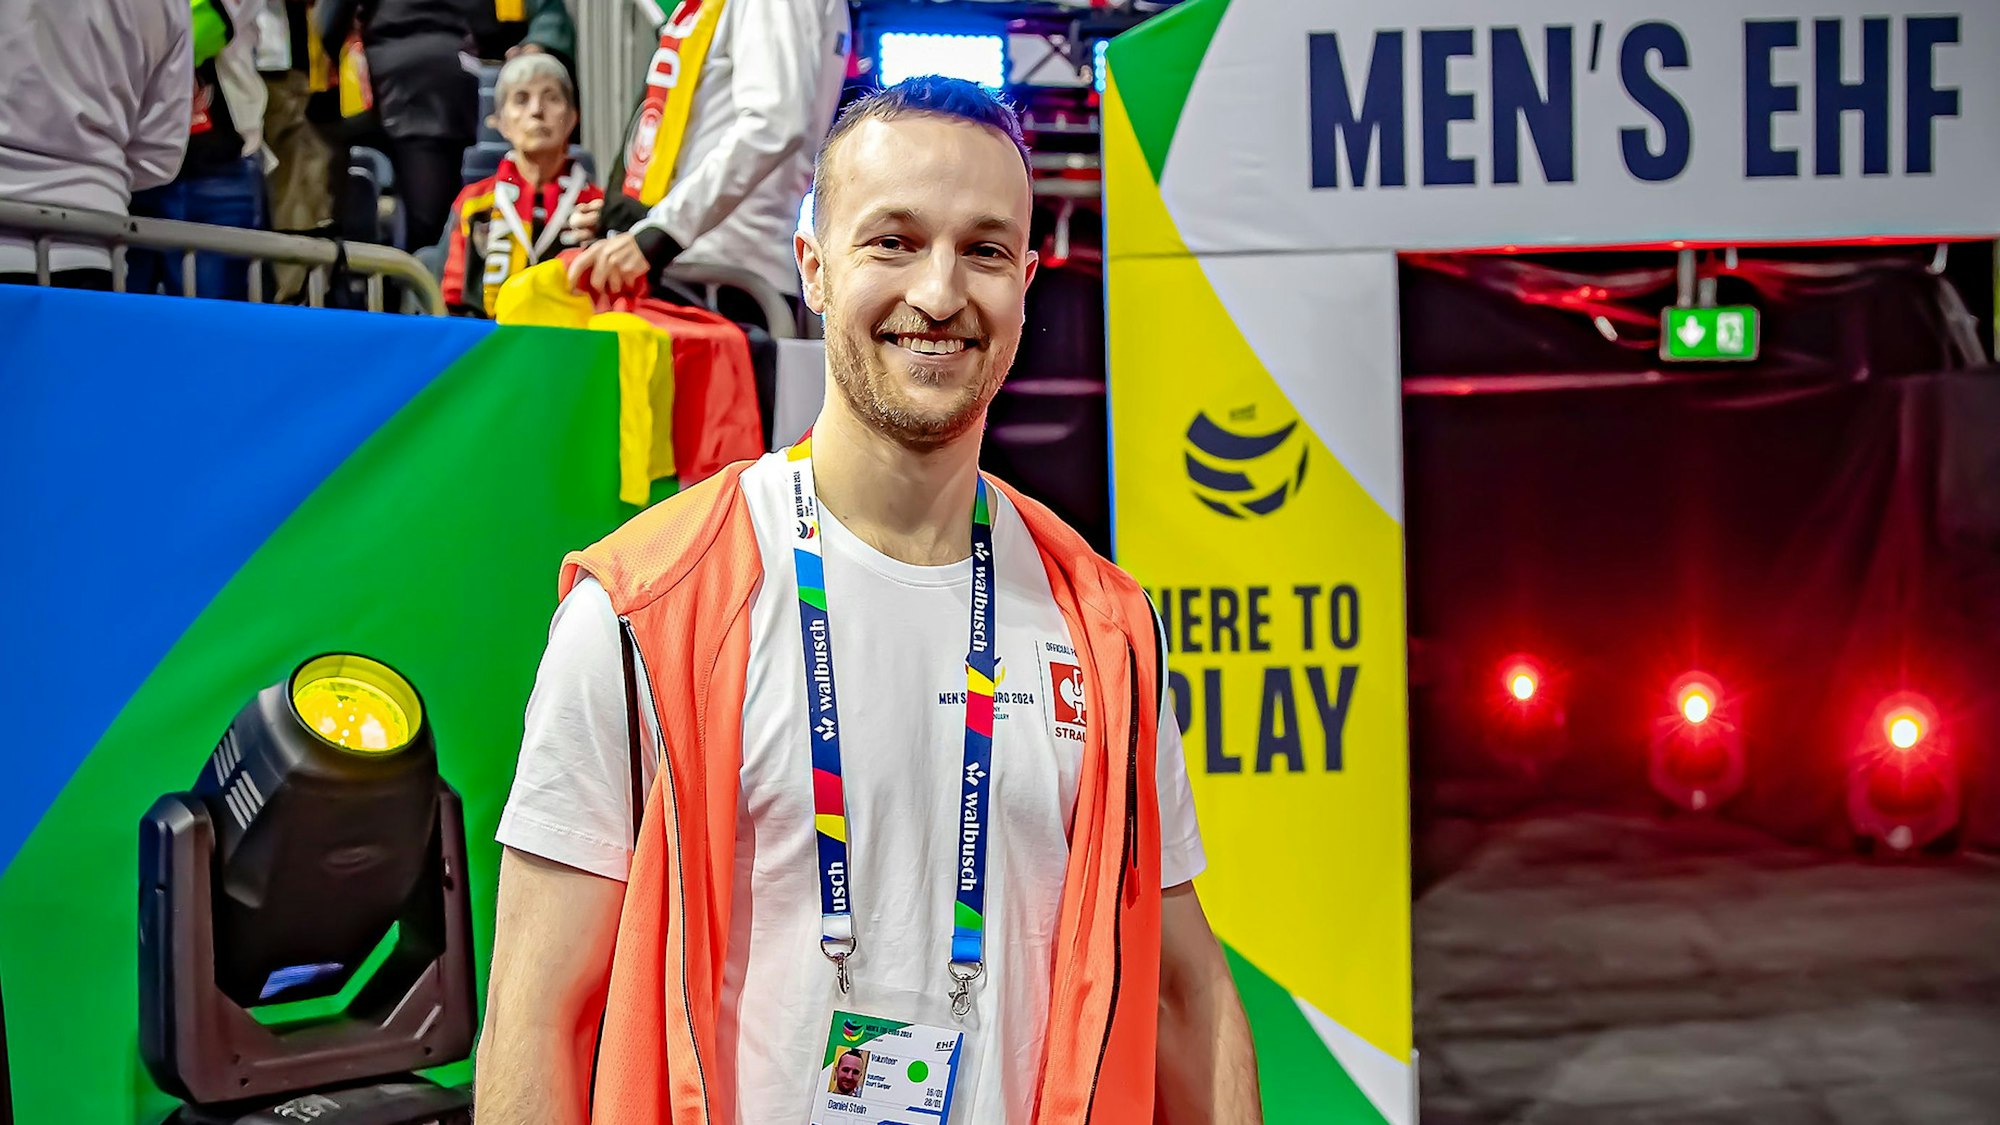 Ein junger Mann mit oranger Weste in einer Sporthalle. Im Hintergrund ist der der Schriftzug "Men's EHF" für die Handball-Europameisterschaft zu lesen.